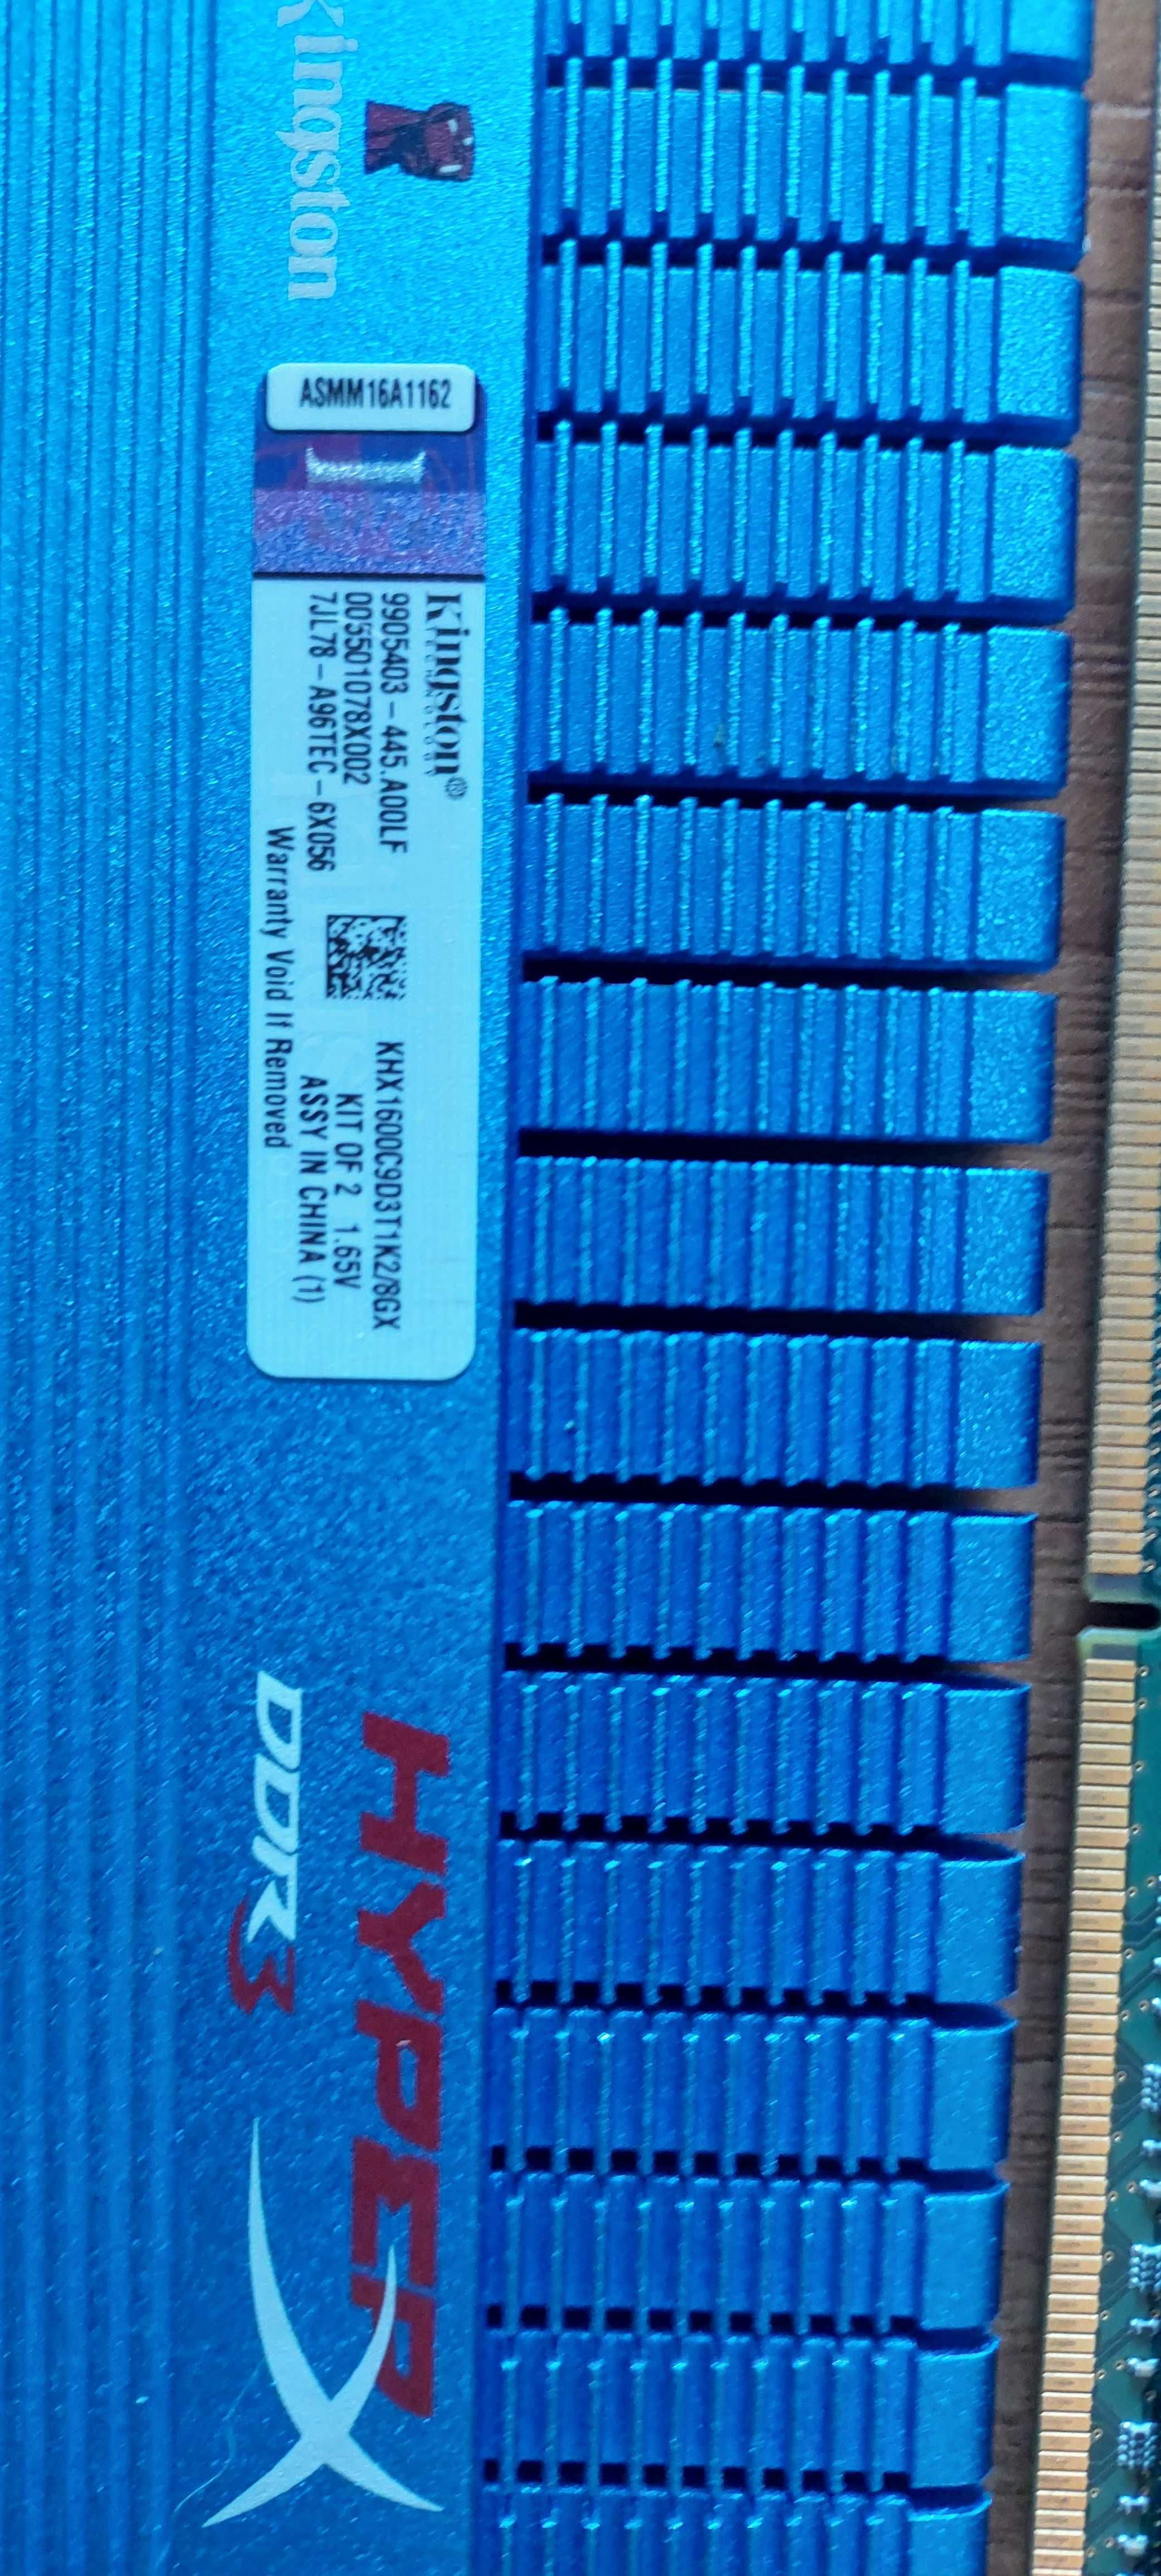 ОЗУ 4ГБ+4ГБ DDR3-1600 (800МГц)